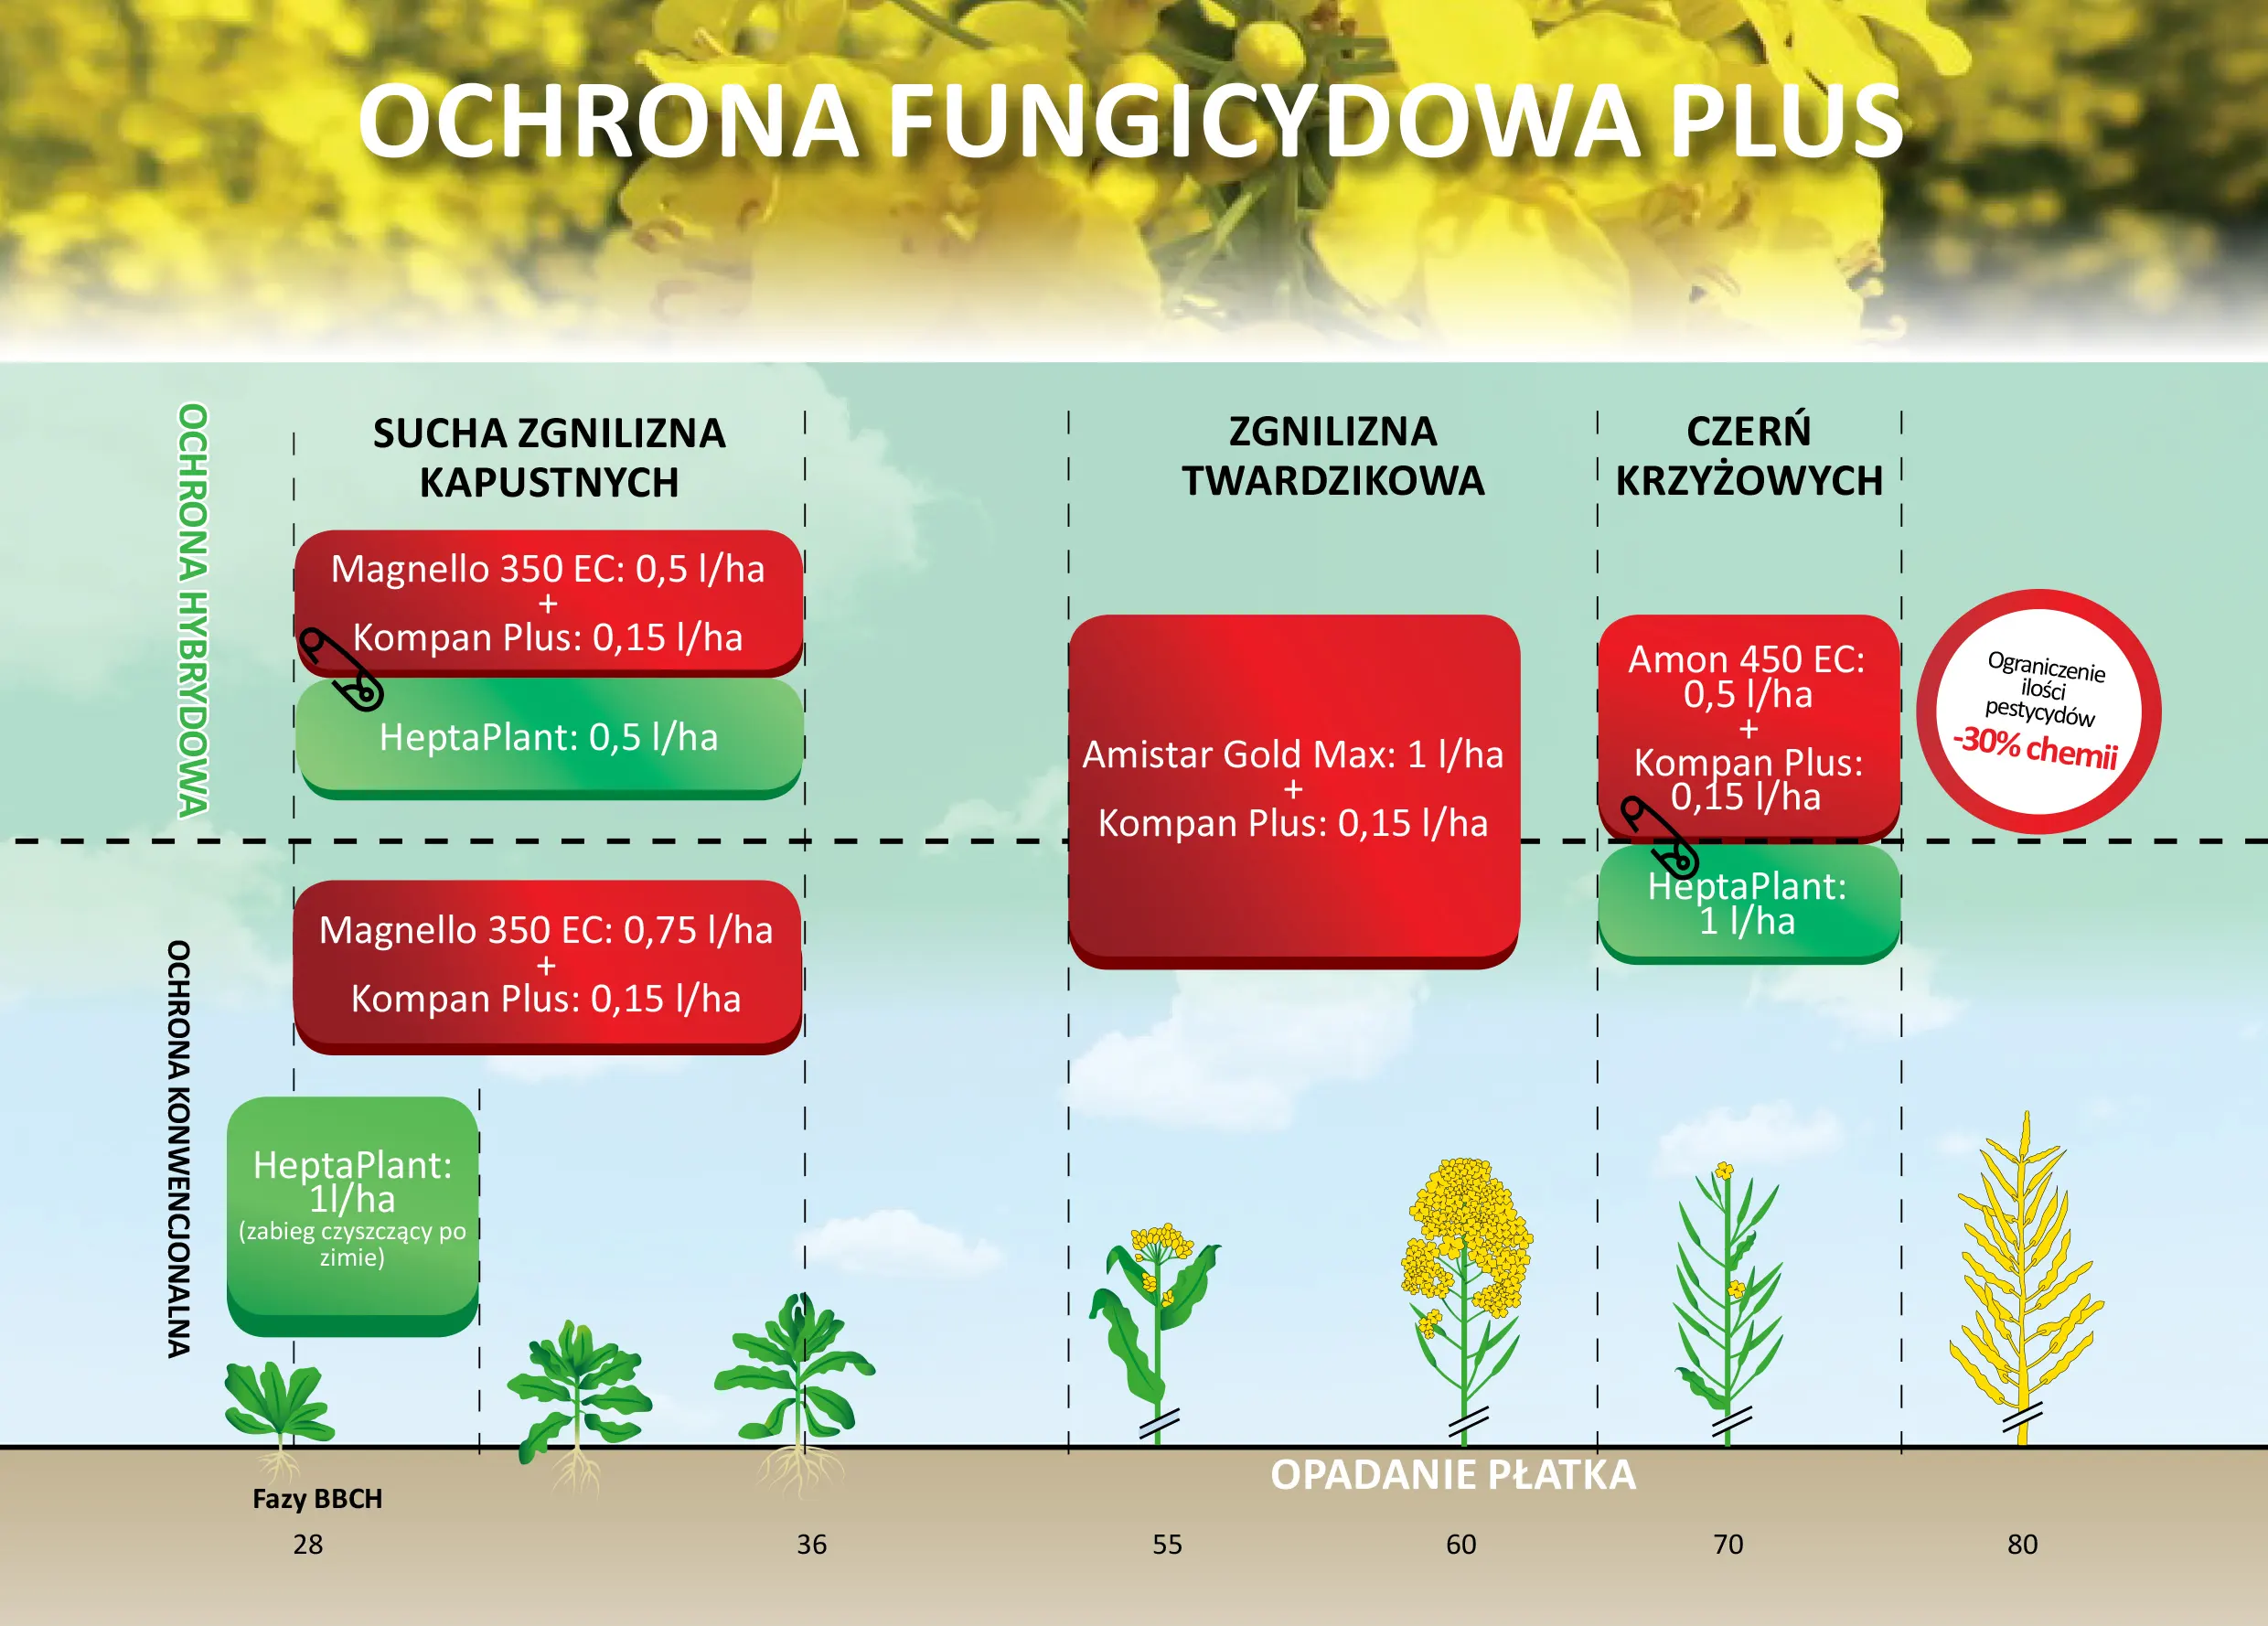 Ochrona fungicydowa plus